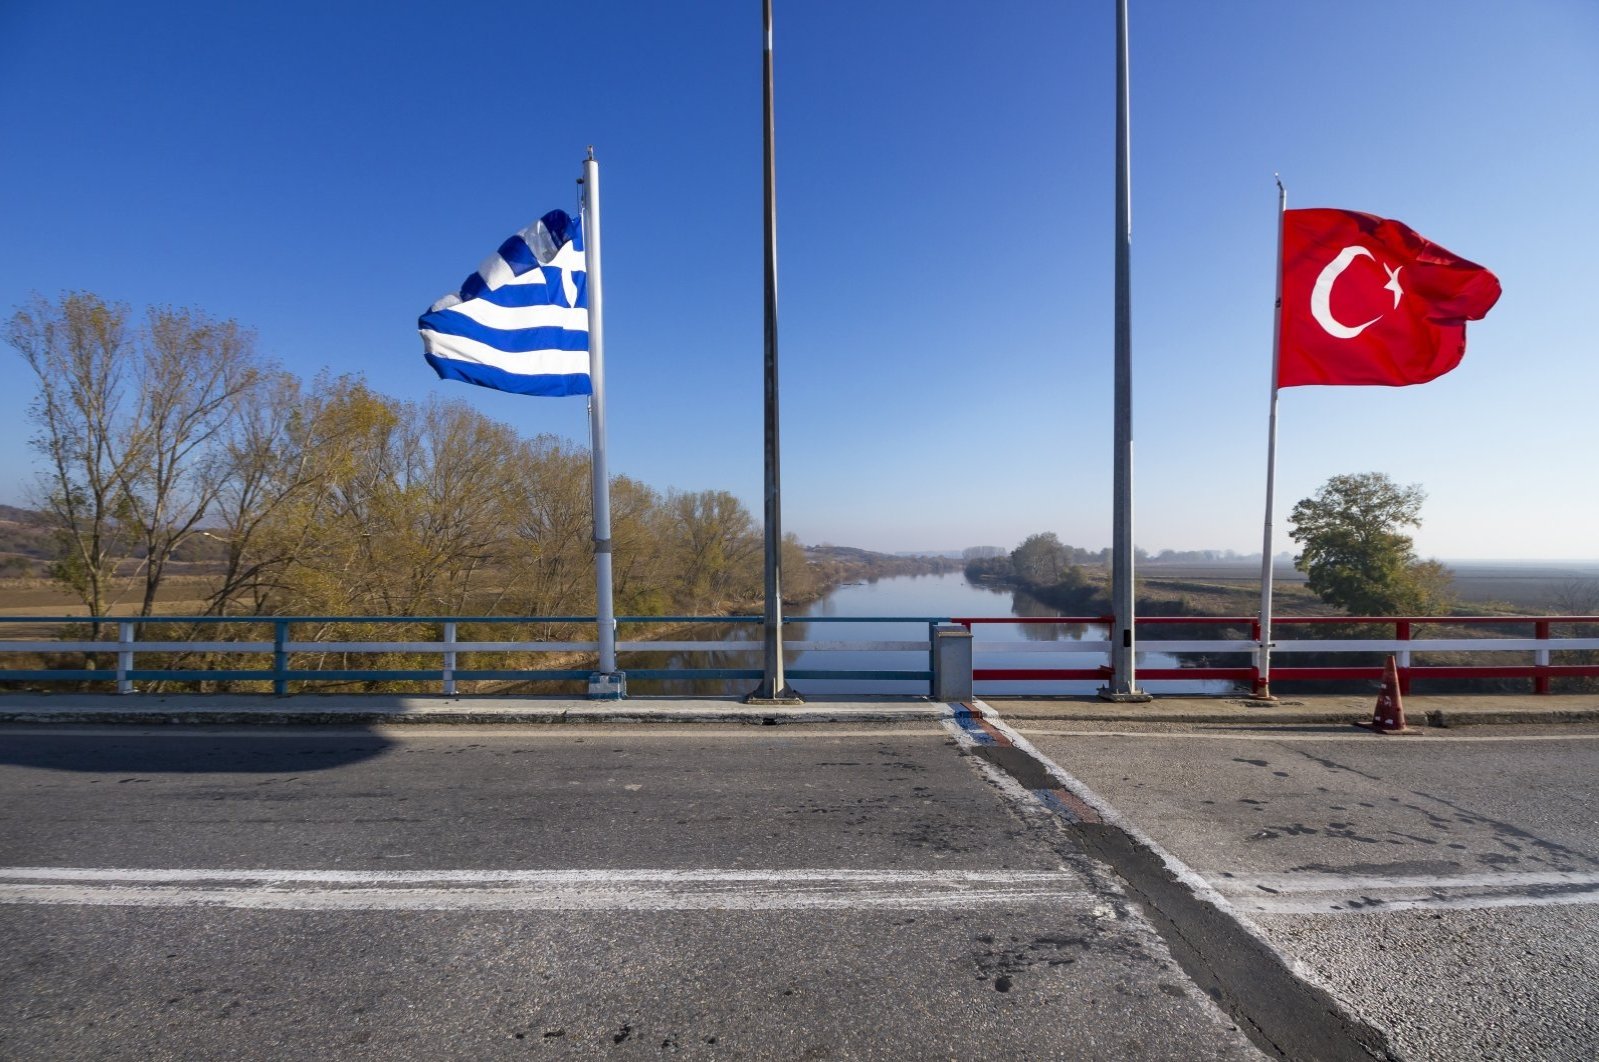 Yunani menolak masuk ke studi akademis Western Thrace Turks